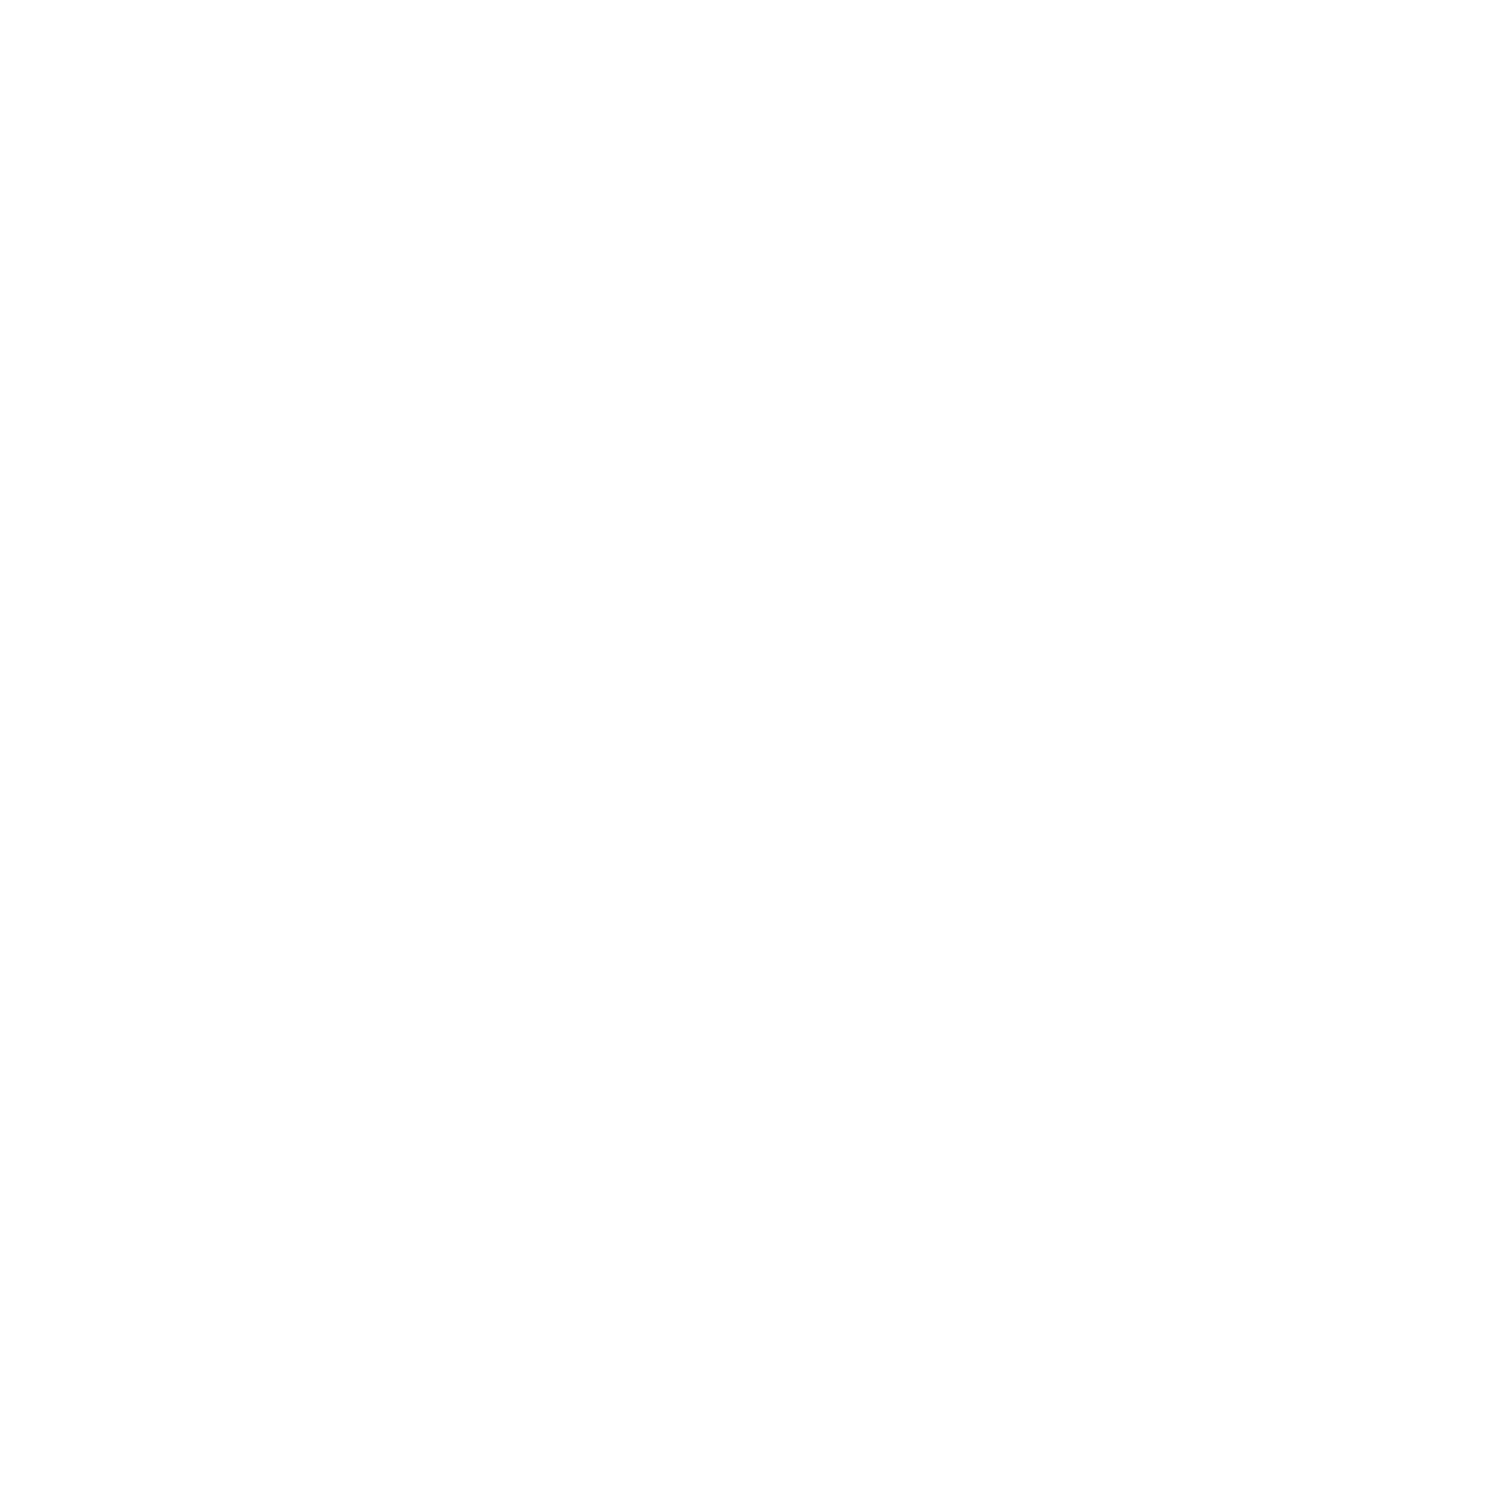 DRTY TORQUE